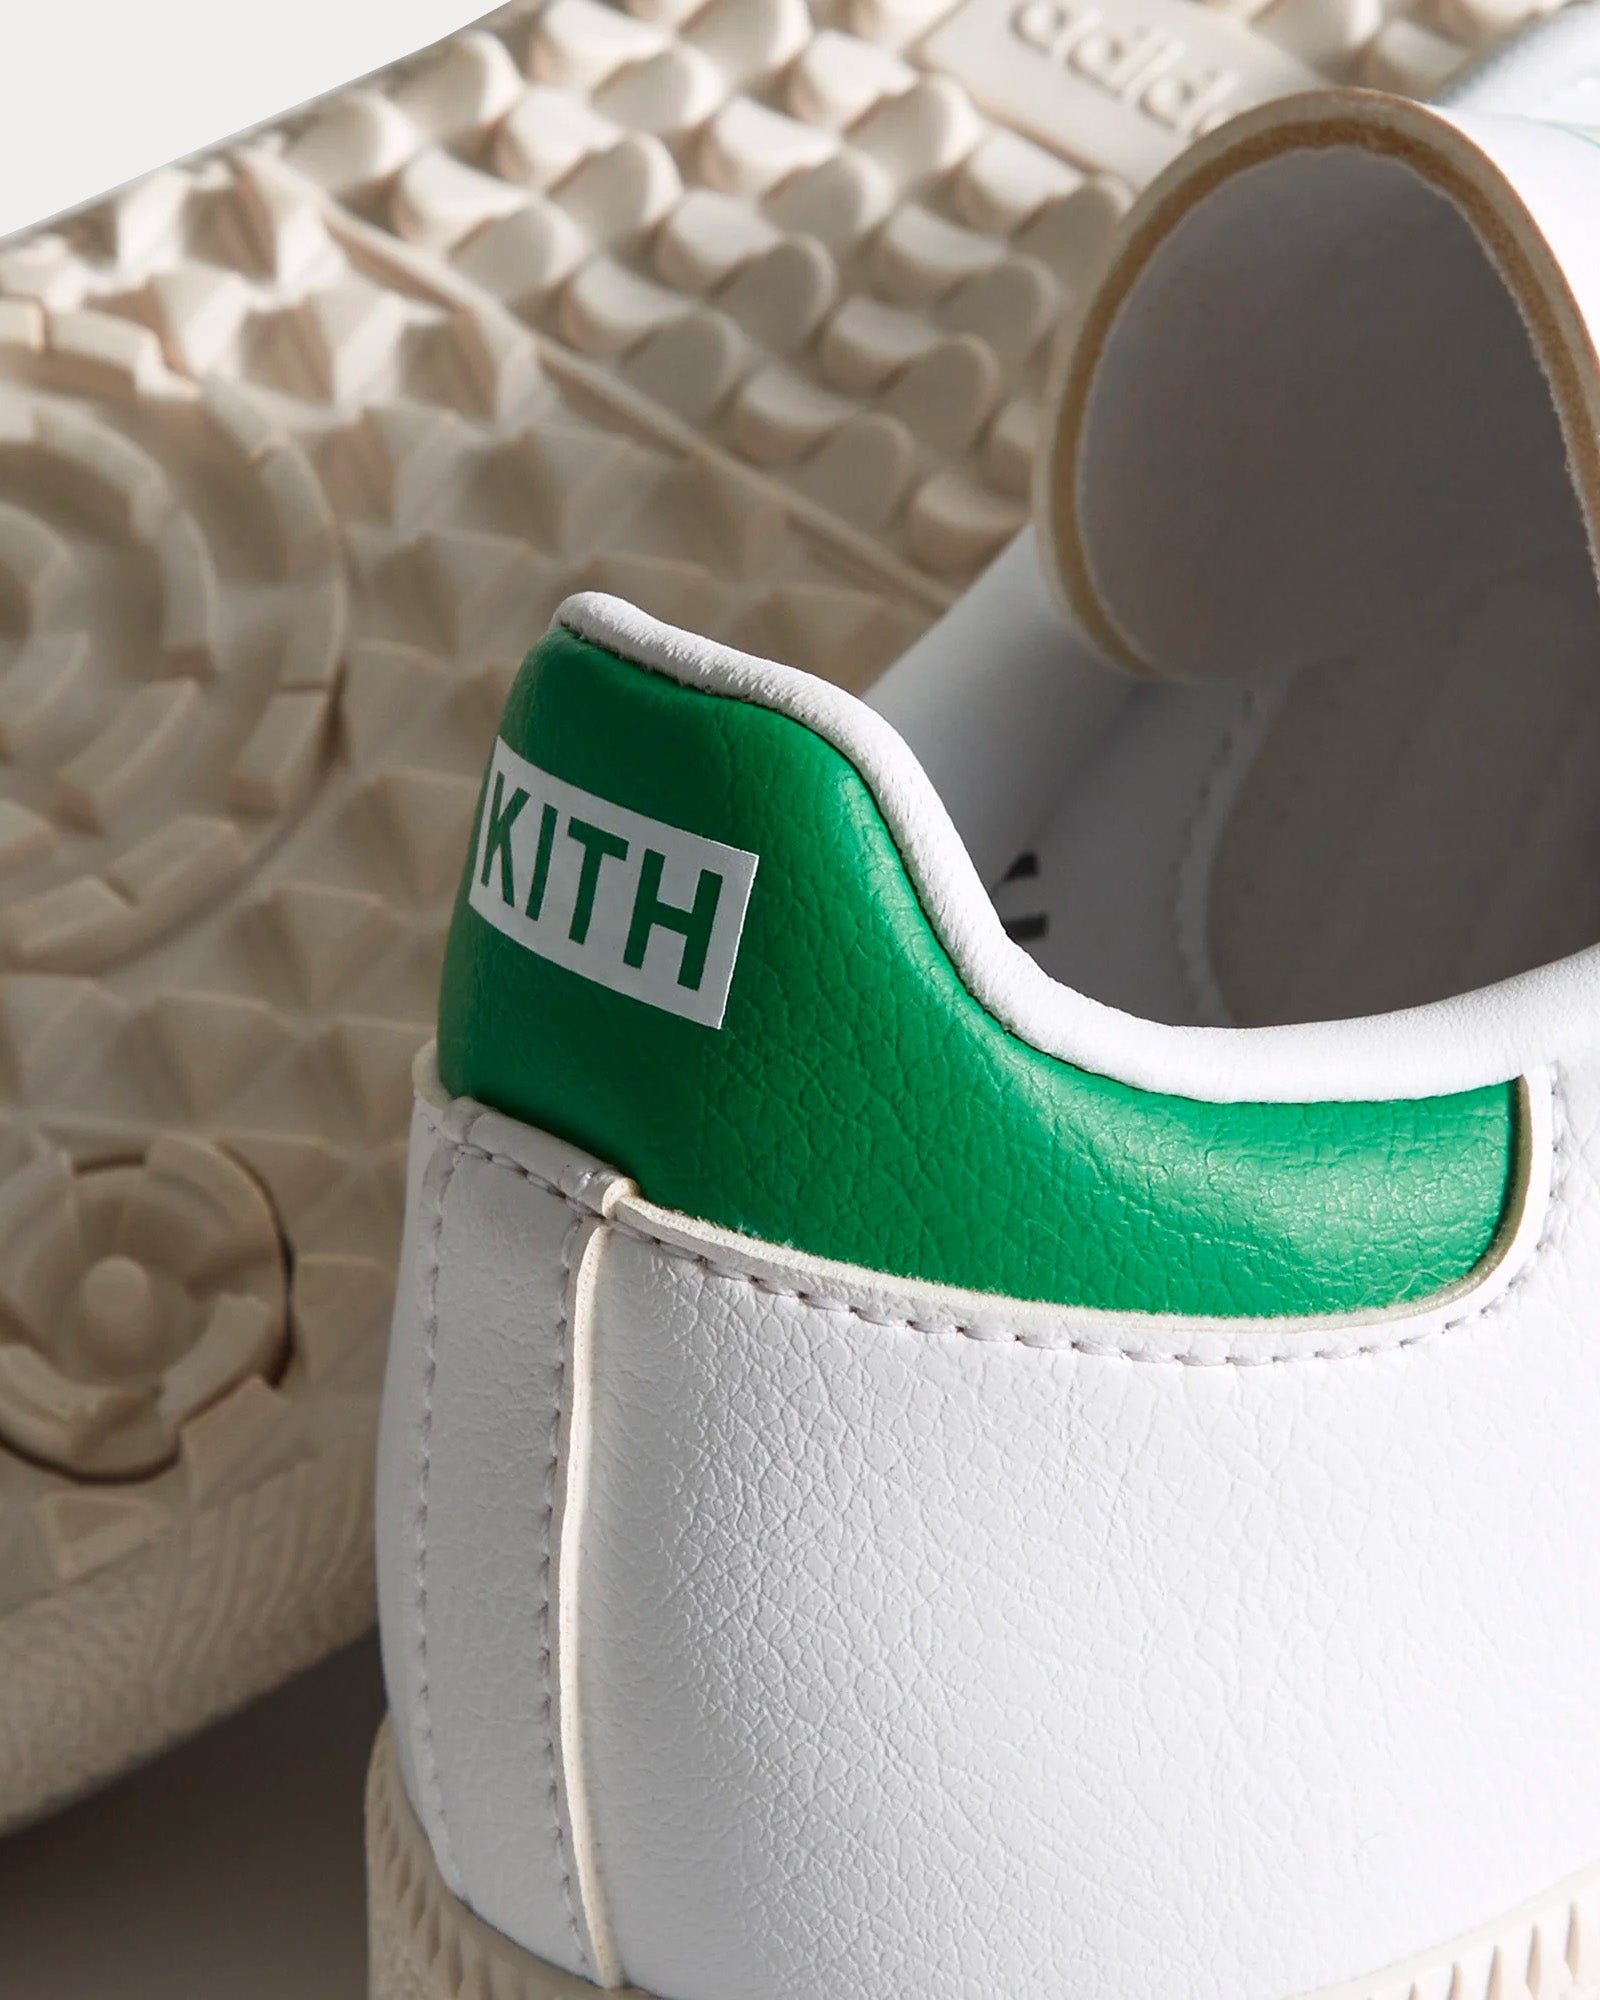 Adidas x Kith - Samba Golf White / Dash Grey / Off White Low Top Sneakers